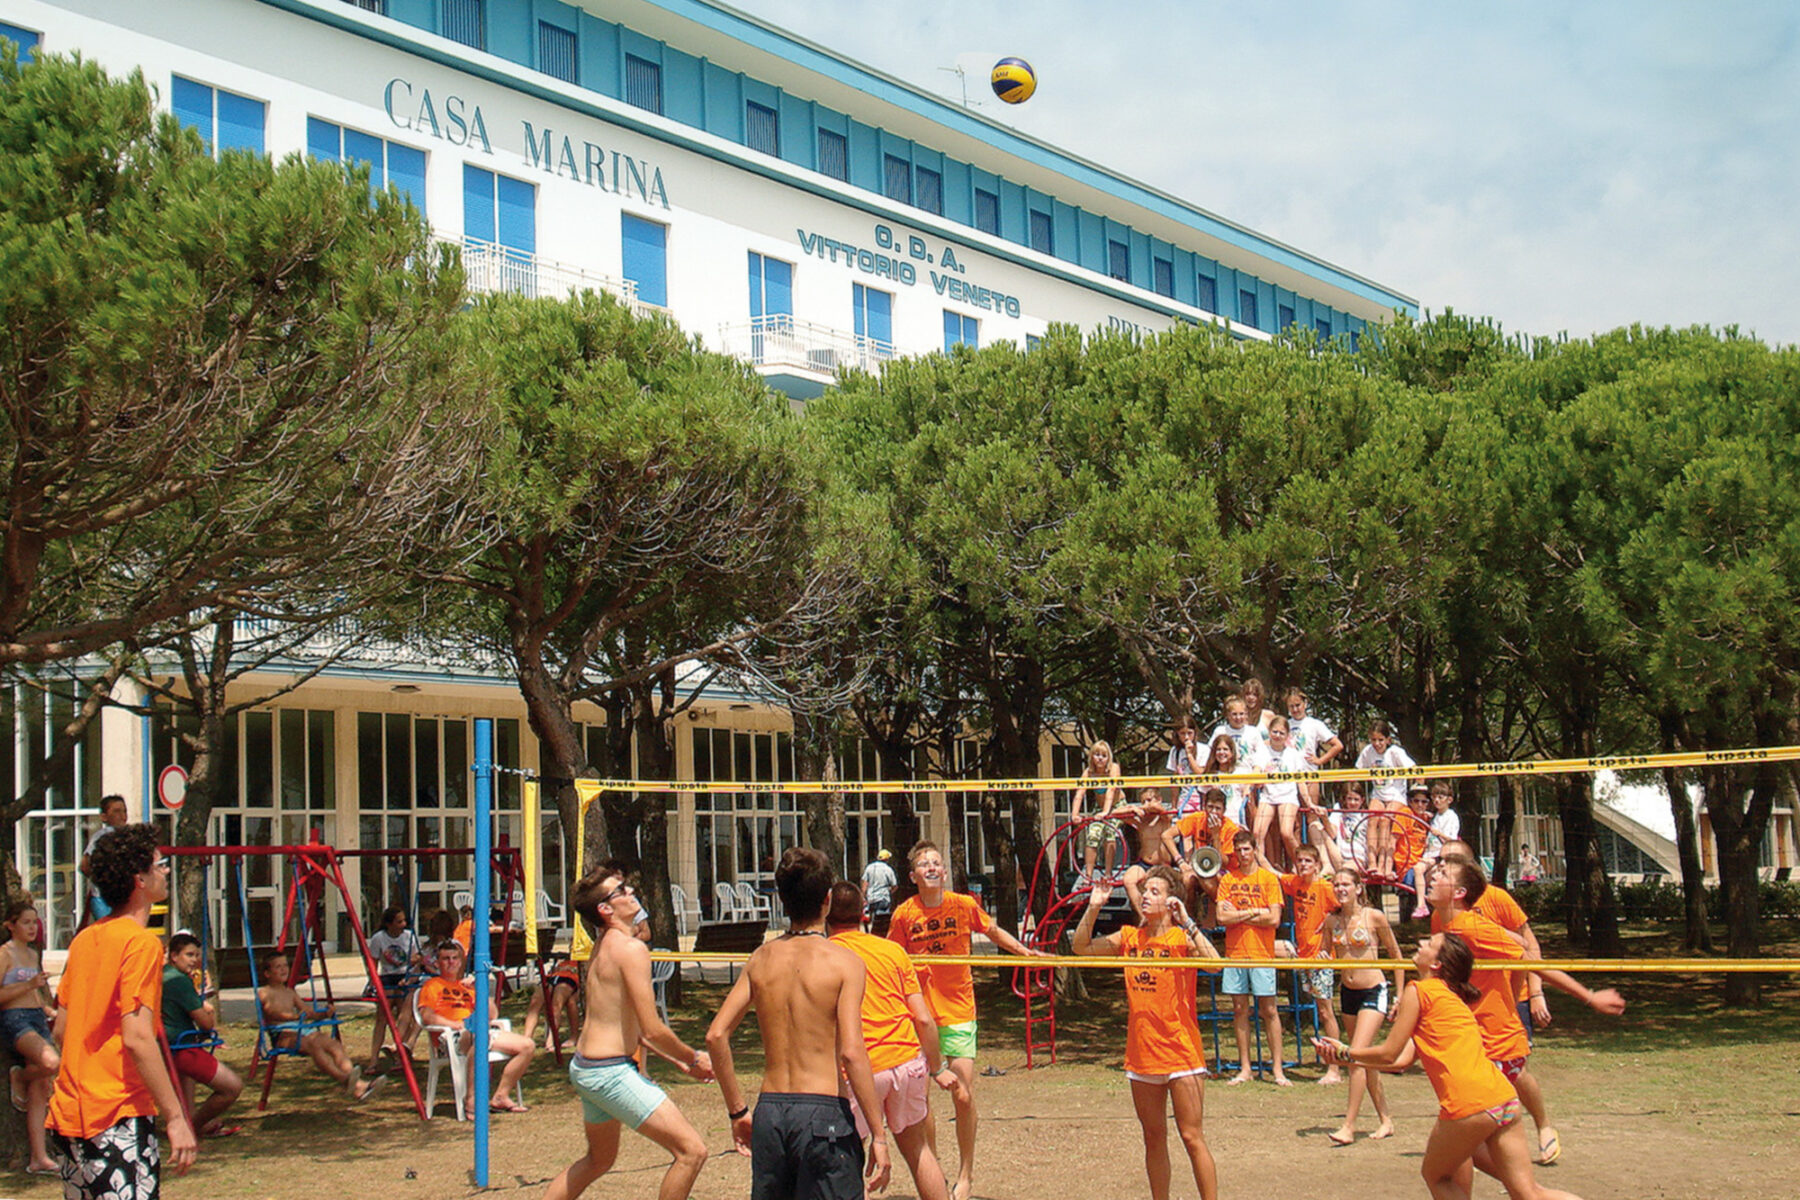 Campo di Beach Volley con ragazzi che giocano di fronte alla casa per ferie Casa Marina di Caorle